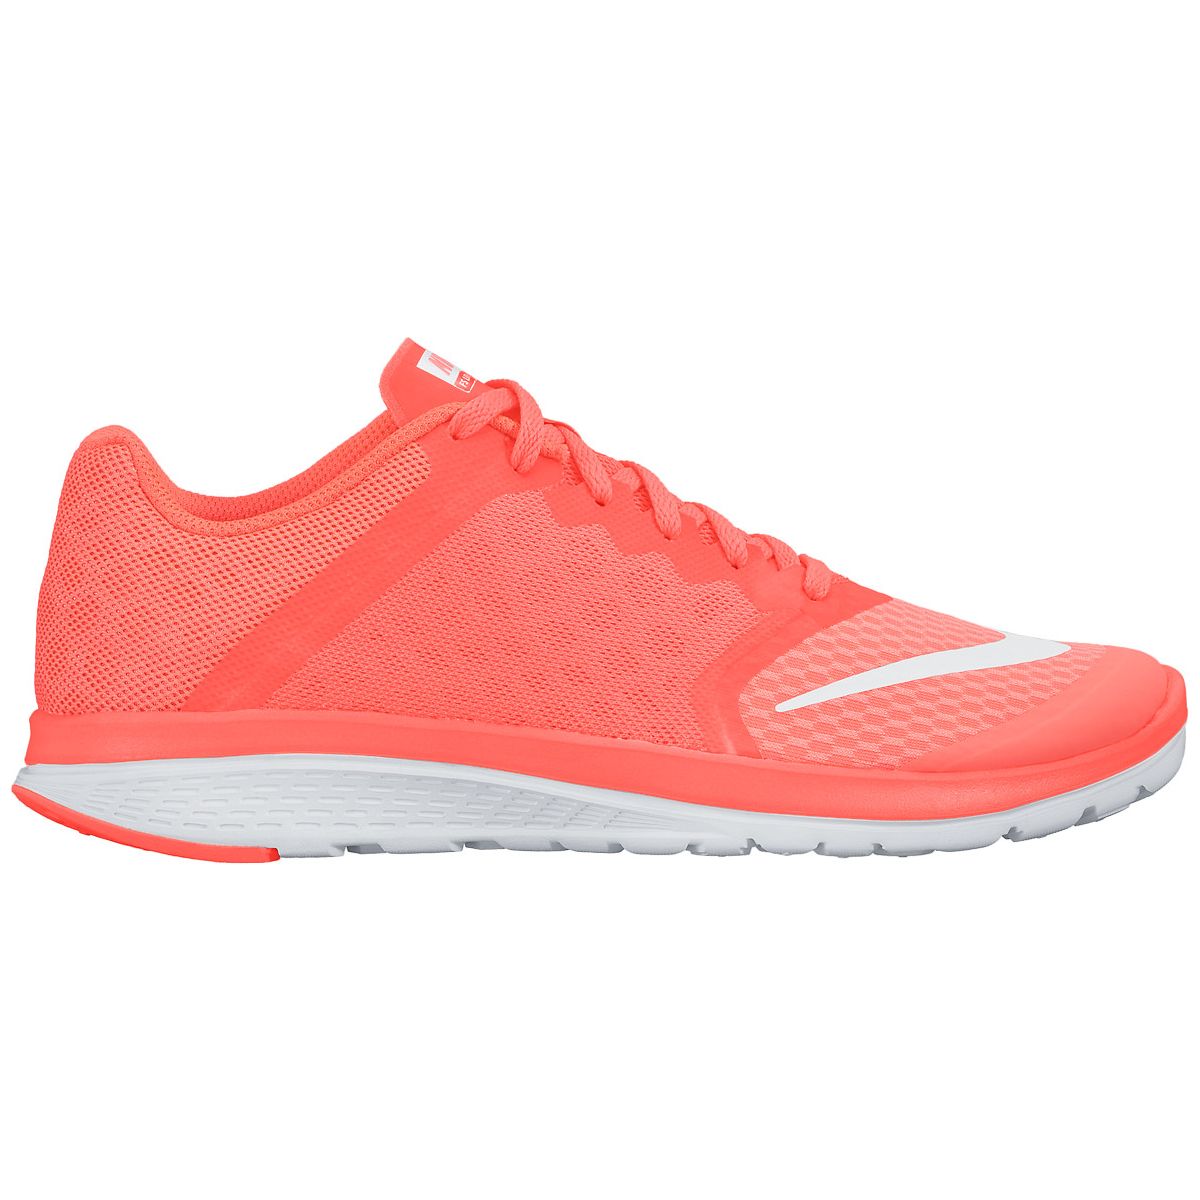 Nike FS Lite Run 3 Women's Running Shoes 807145-601